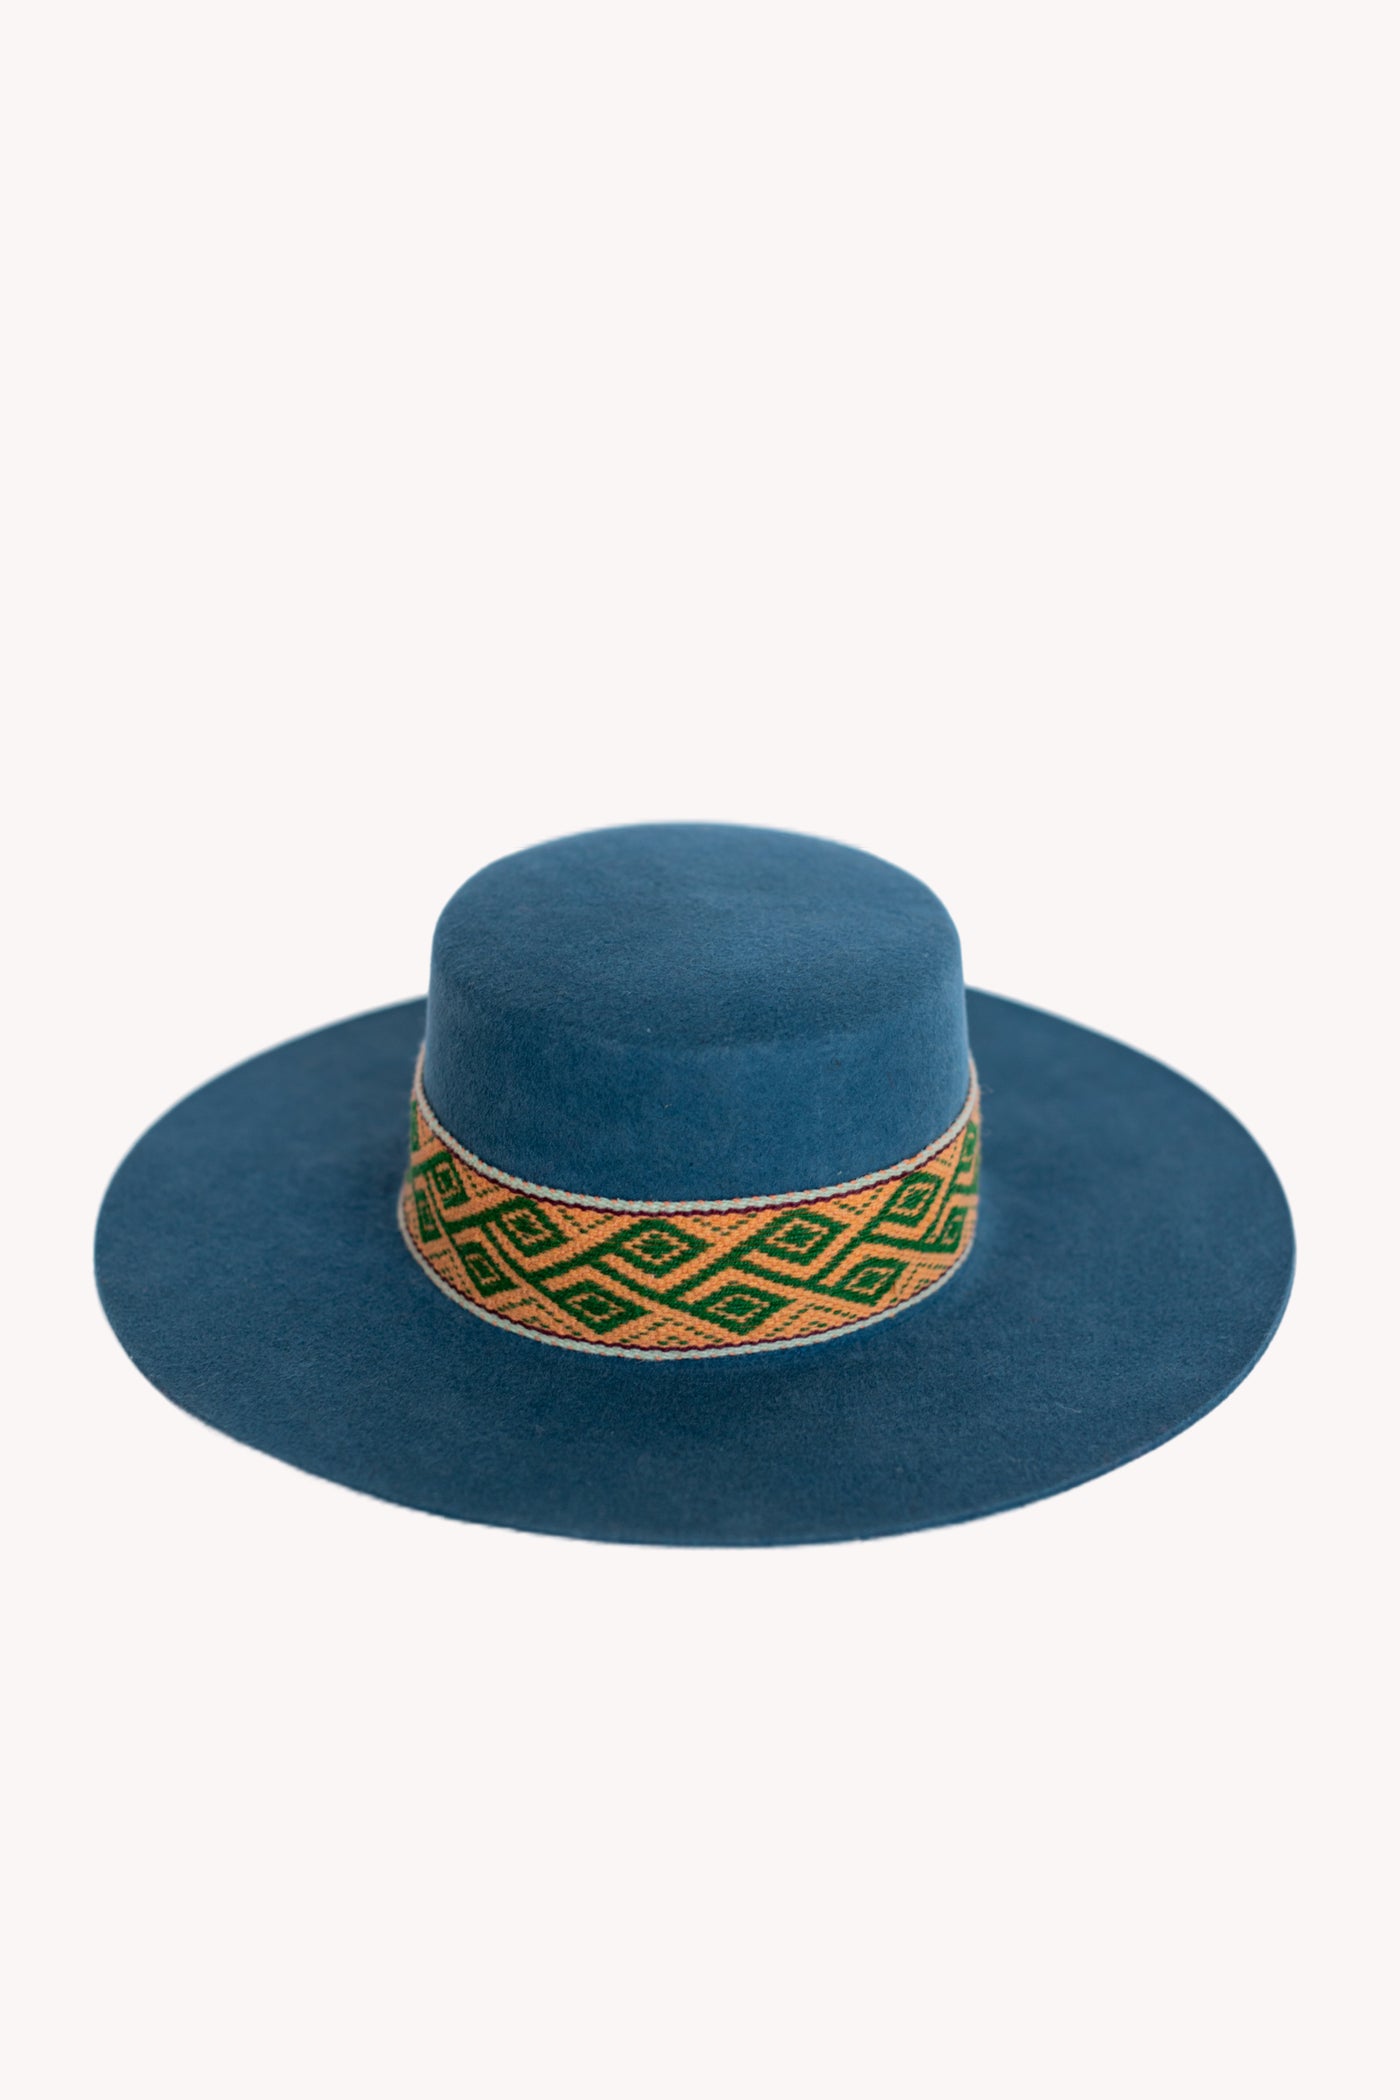 Blue Spanish style sustainable hat